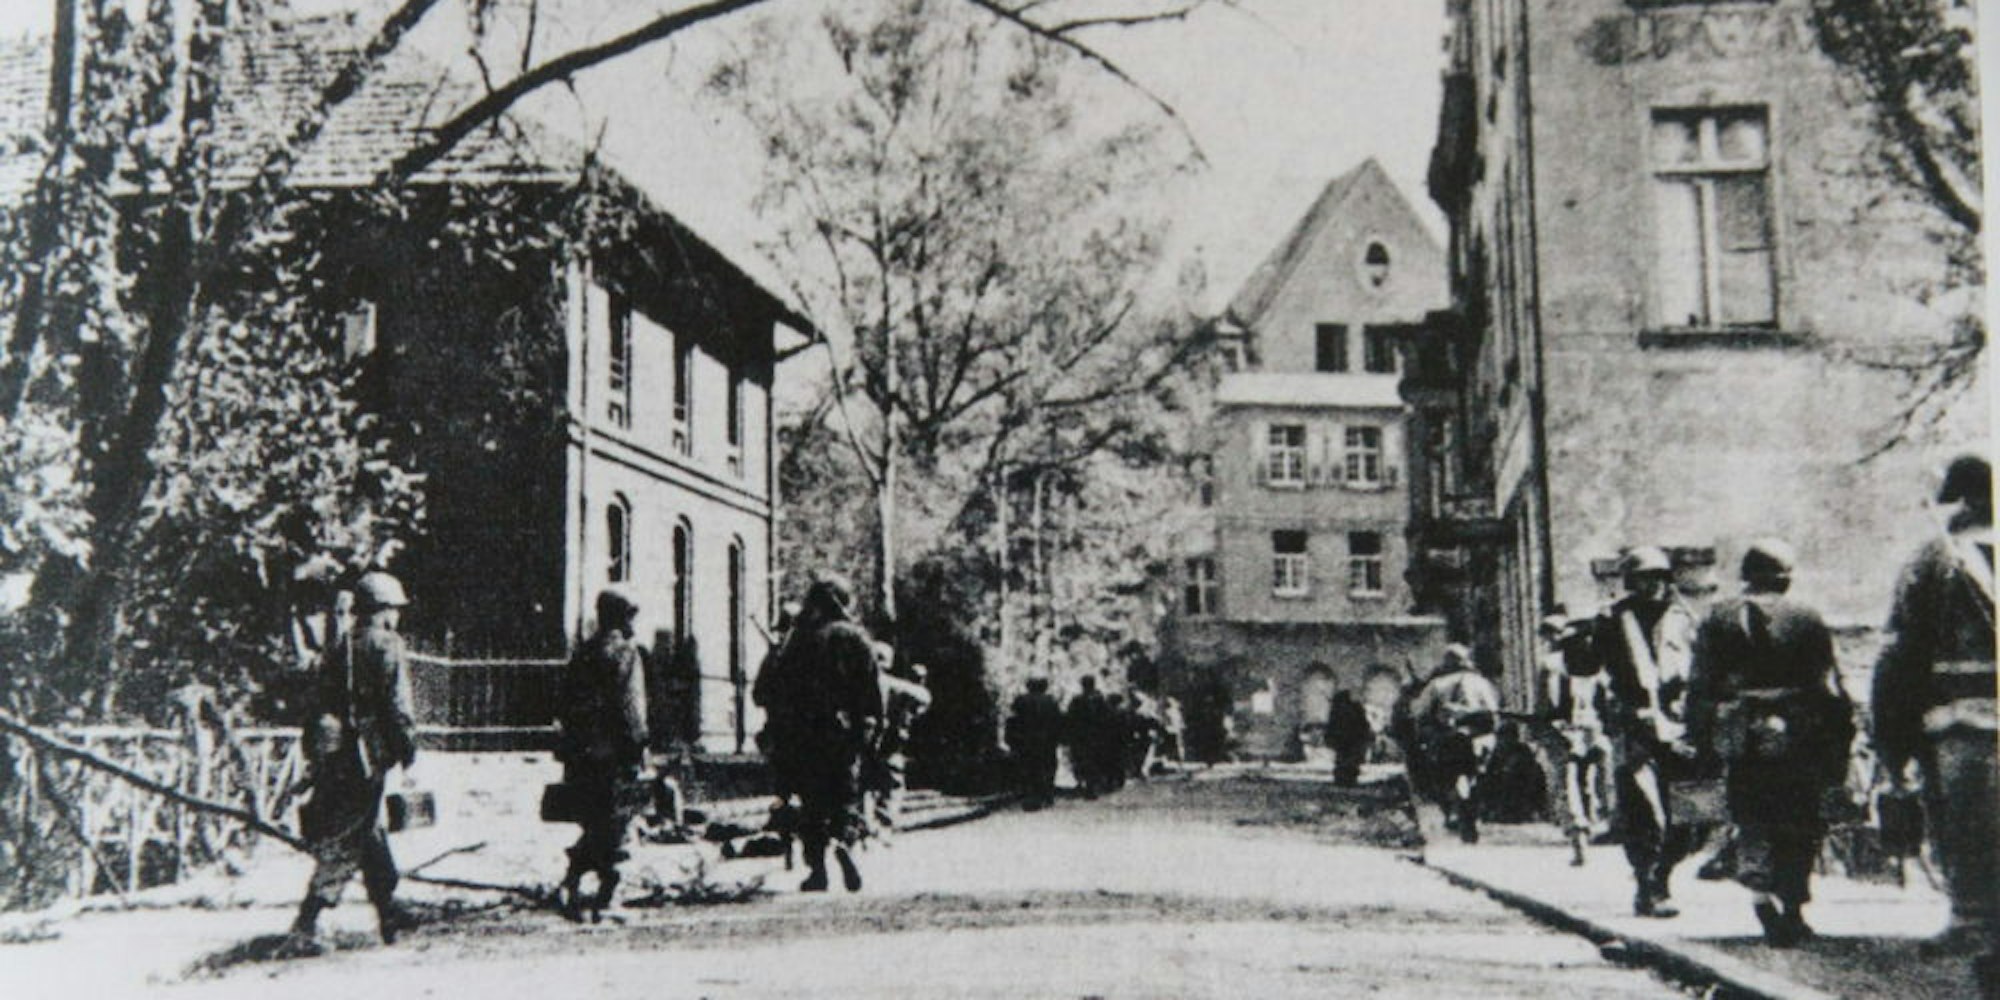 US-amerikanische Truppen marschierten am 10. April 1945 in Siegburg ein.